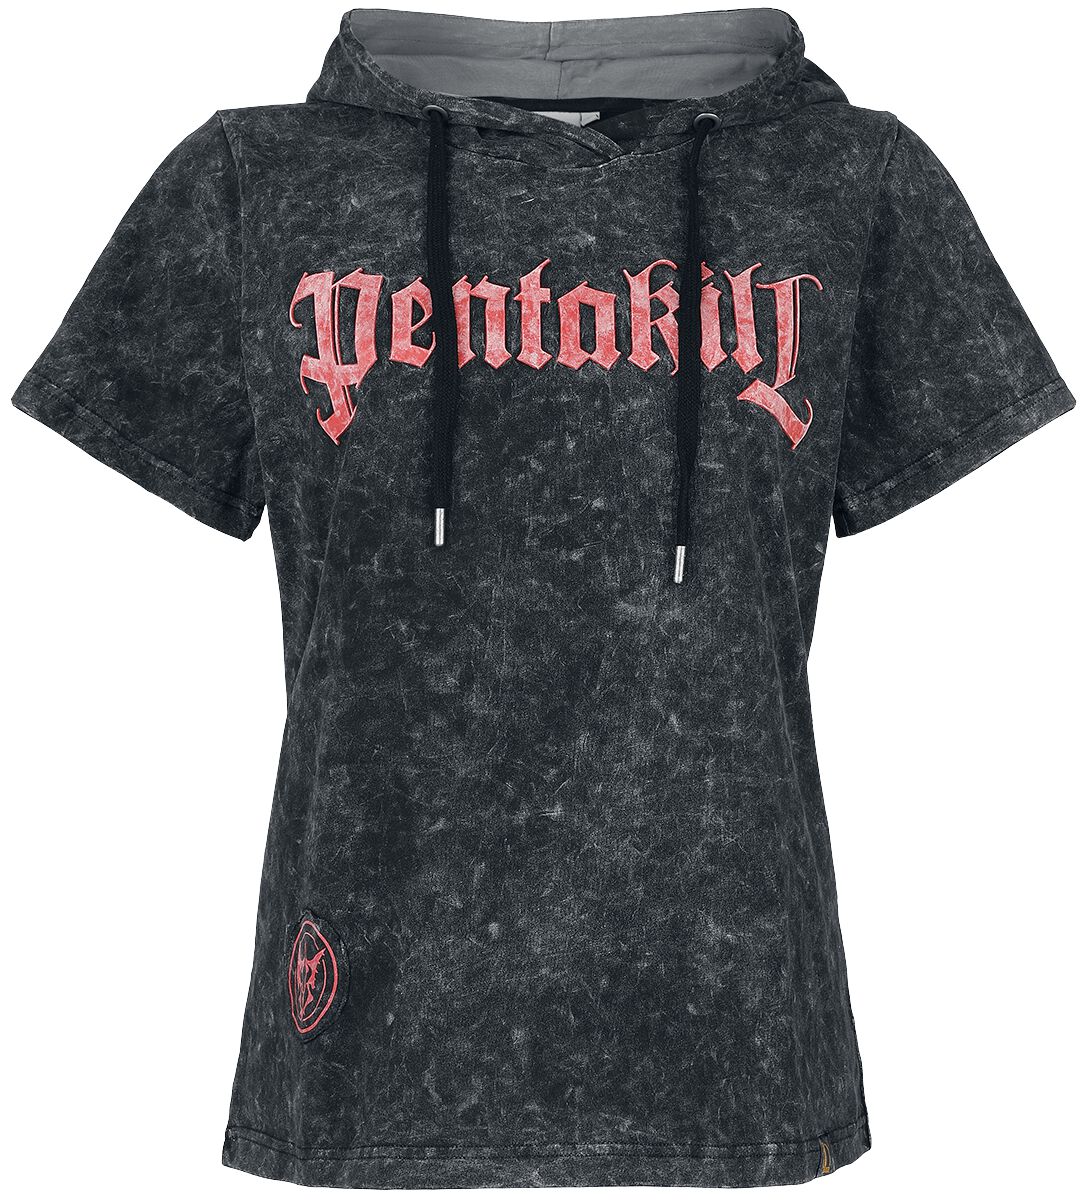 T-Shirt Manches courtes Gaming de League of Legends - Arcane - Pentakill - S à M - pour Femme - noir